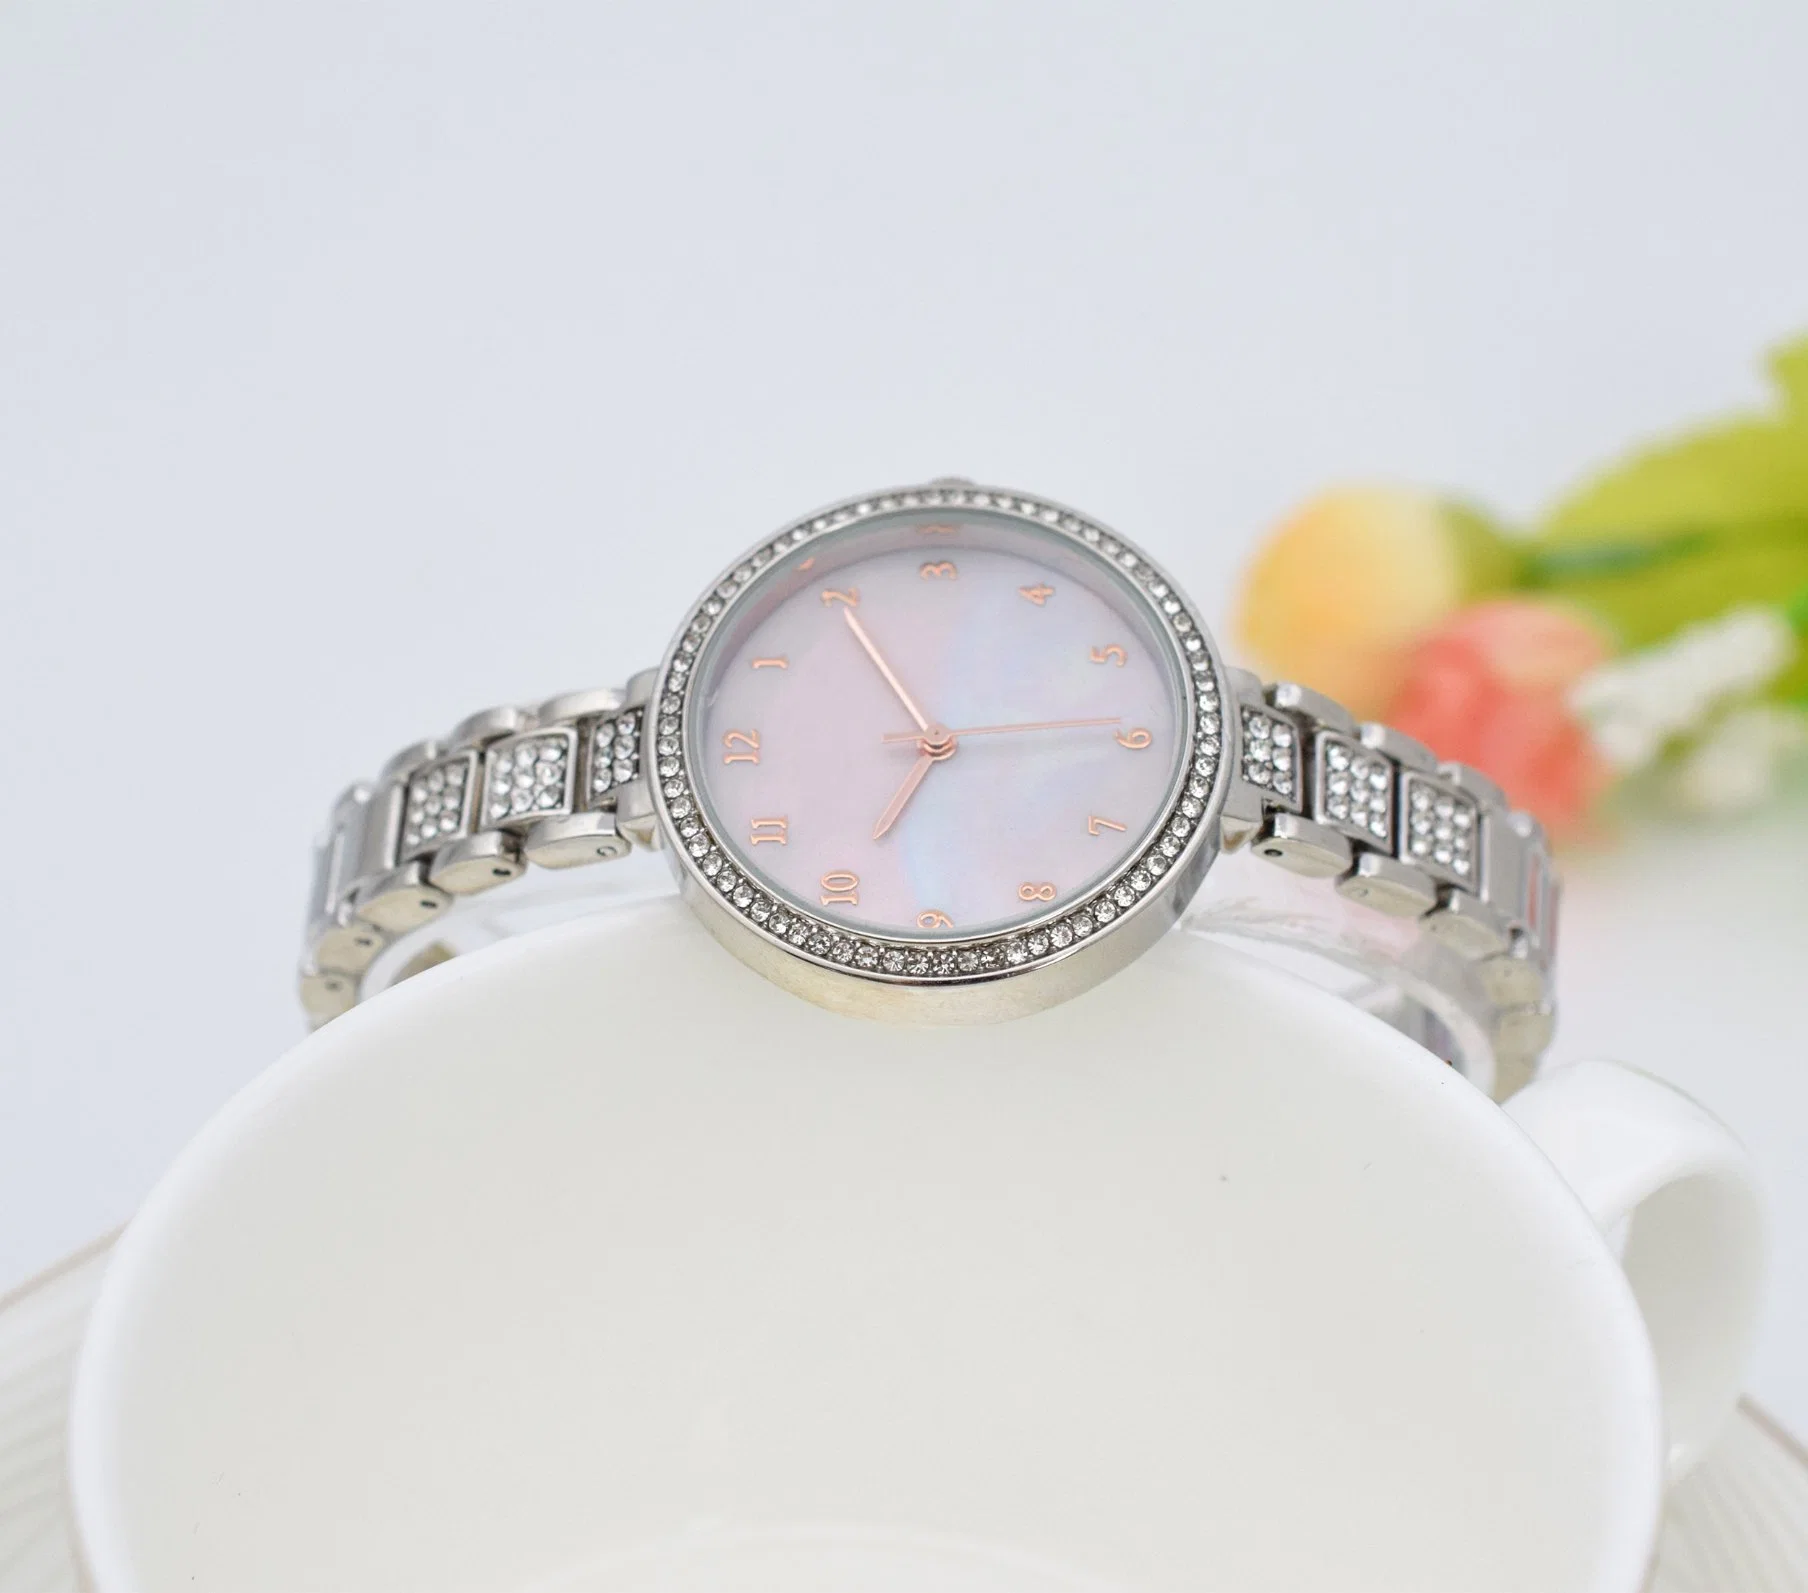 Ver regalo personalizado Ver reloj de cuarzo reloj Dama Reloj de moda de promoción de aleación de reloj barato